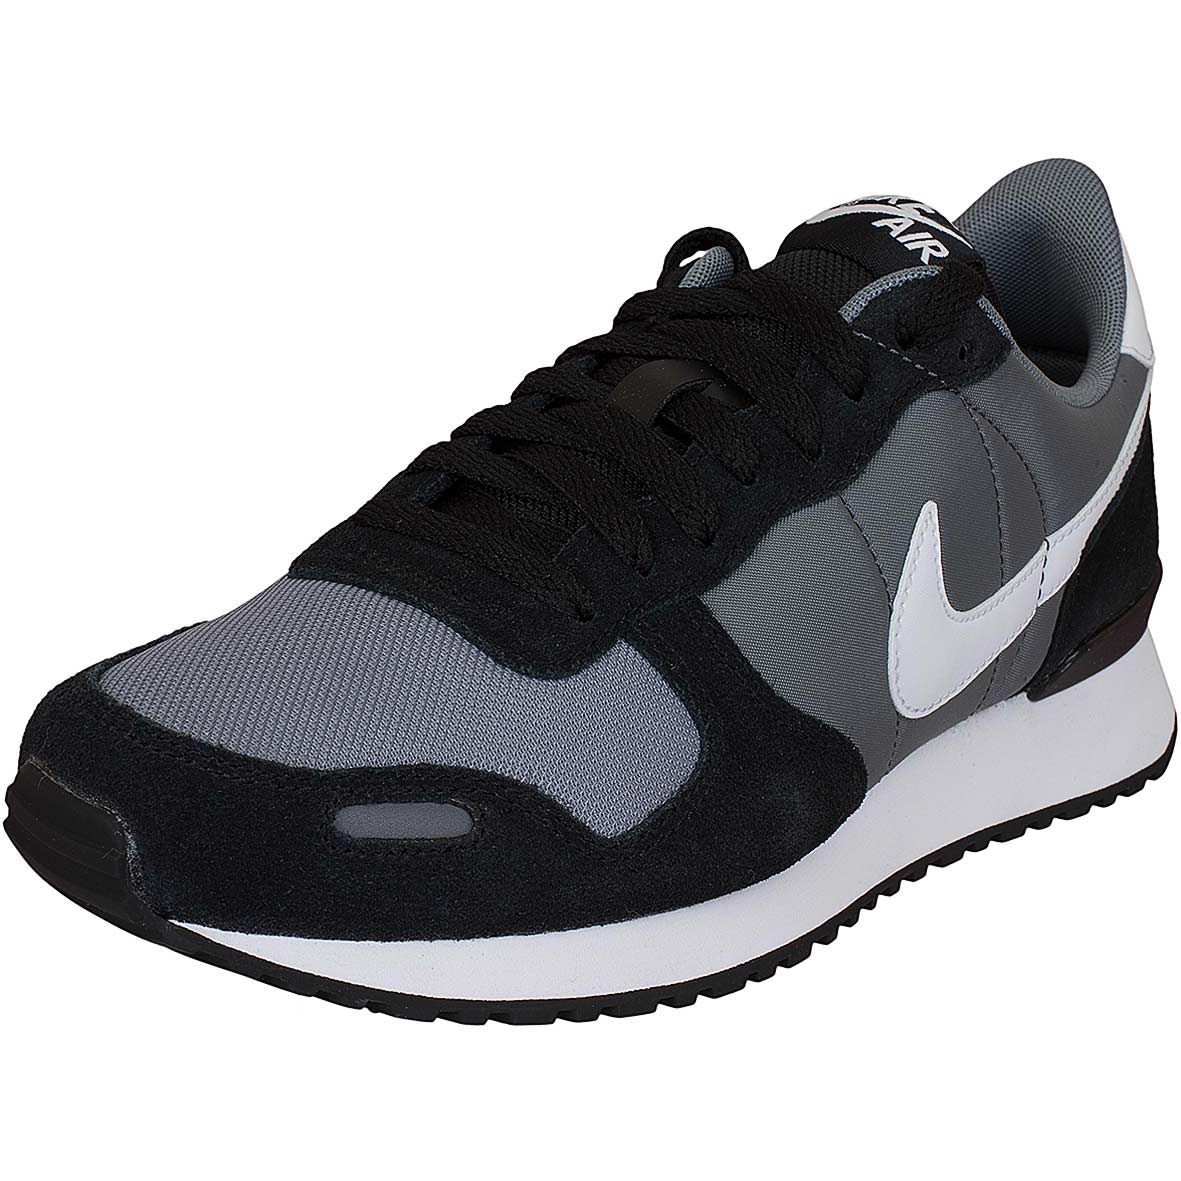 ☆ Nike Sneaker Air Vortex schwarz/weiß - hier bestellen!